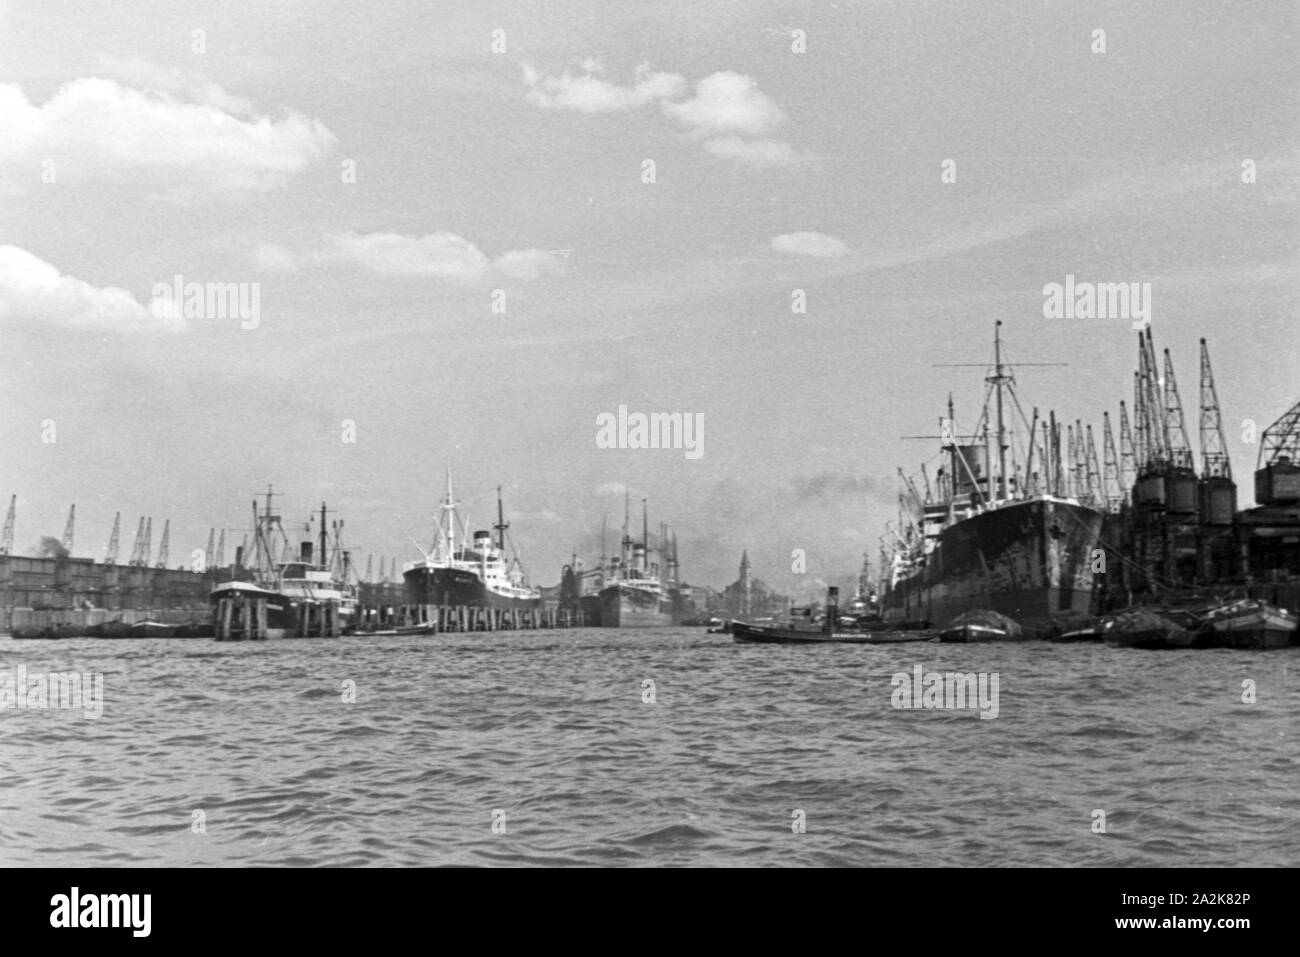 Das Walfangfabrikschiff 'Jan Wellem' der deutschen Walfangflotte läuft in den Hafen von Hamburg ein, 1930er Jahre. Factory vessel 'Jan Wellem' entering Hamburg port, 1930s. Stock Photo